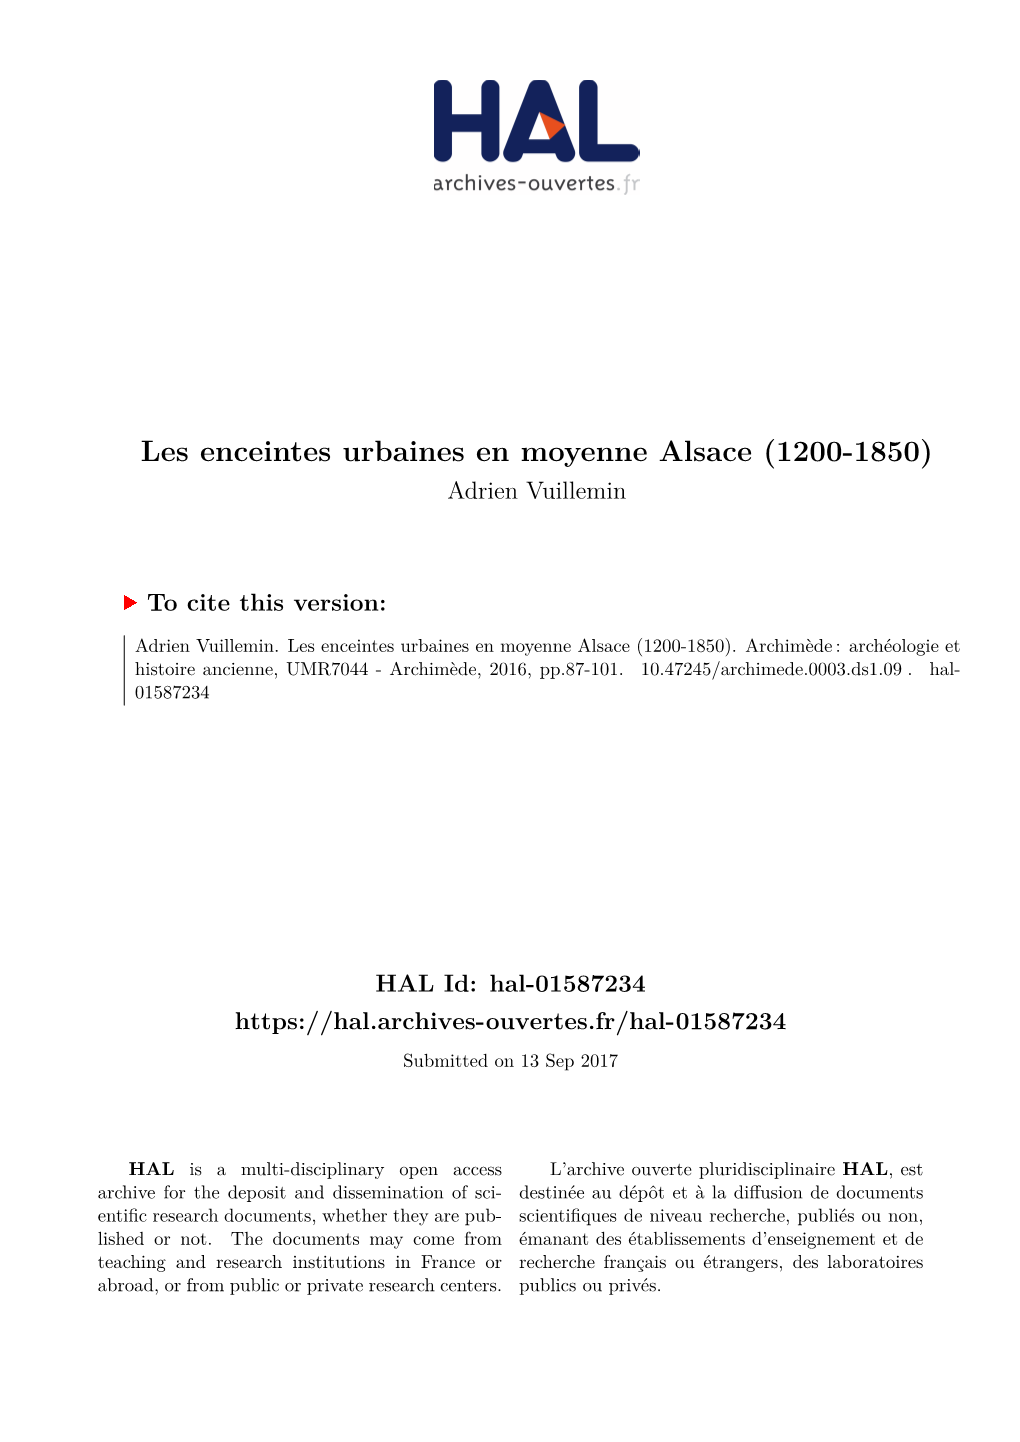 Les Enceintes Urbaines En Moyenne Alsace (1200-1850) Adrien Vuillemin